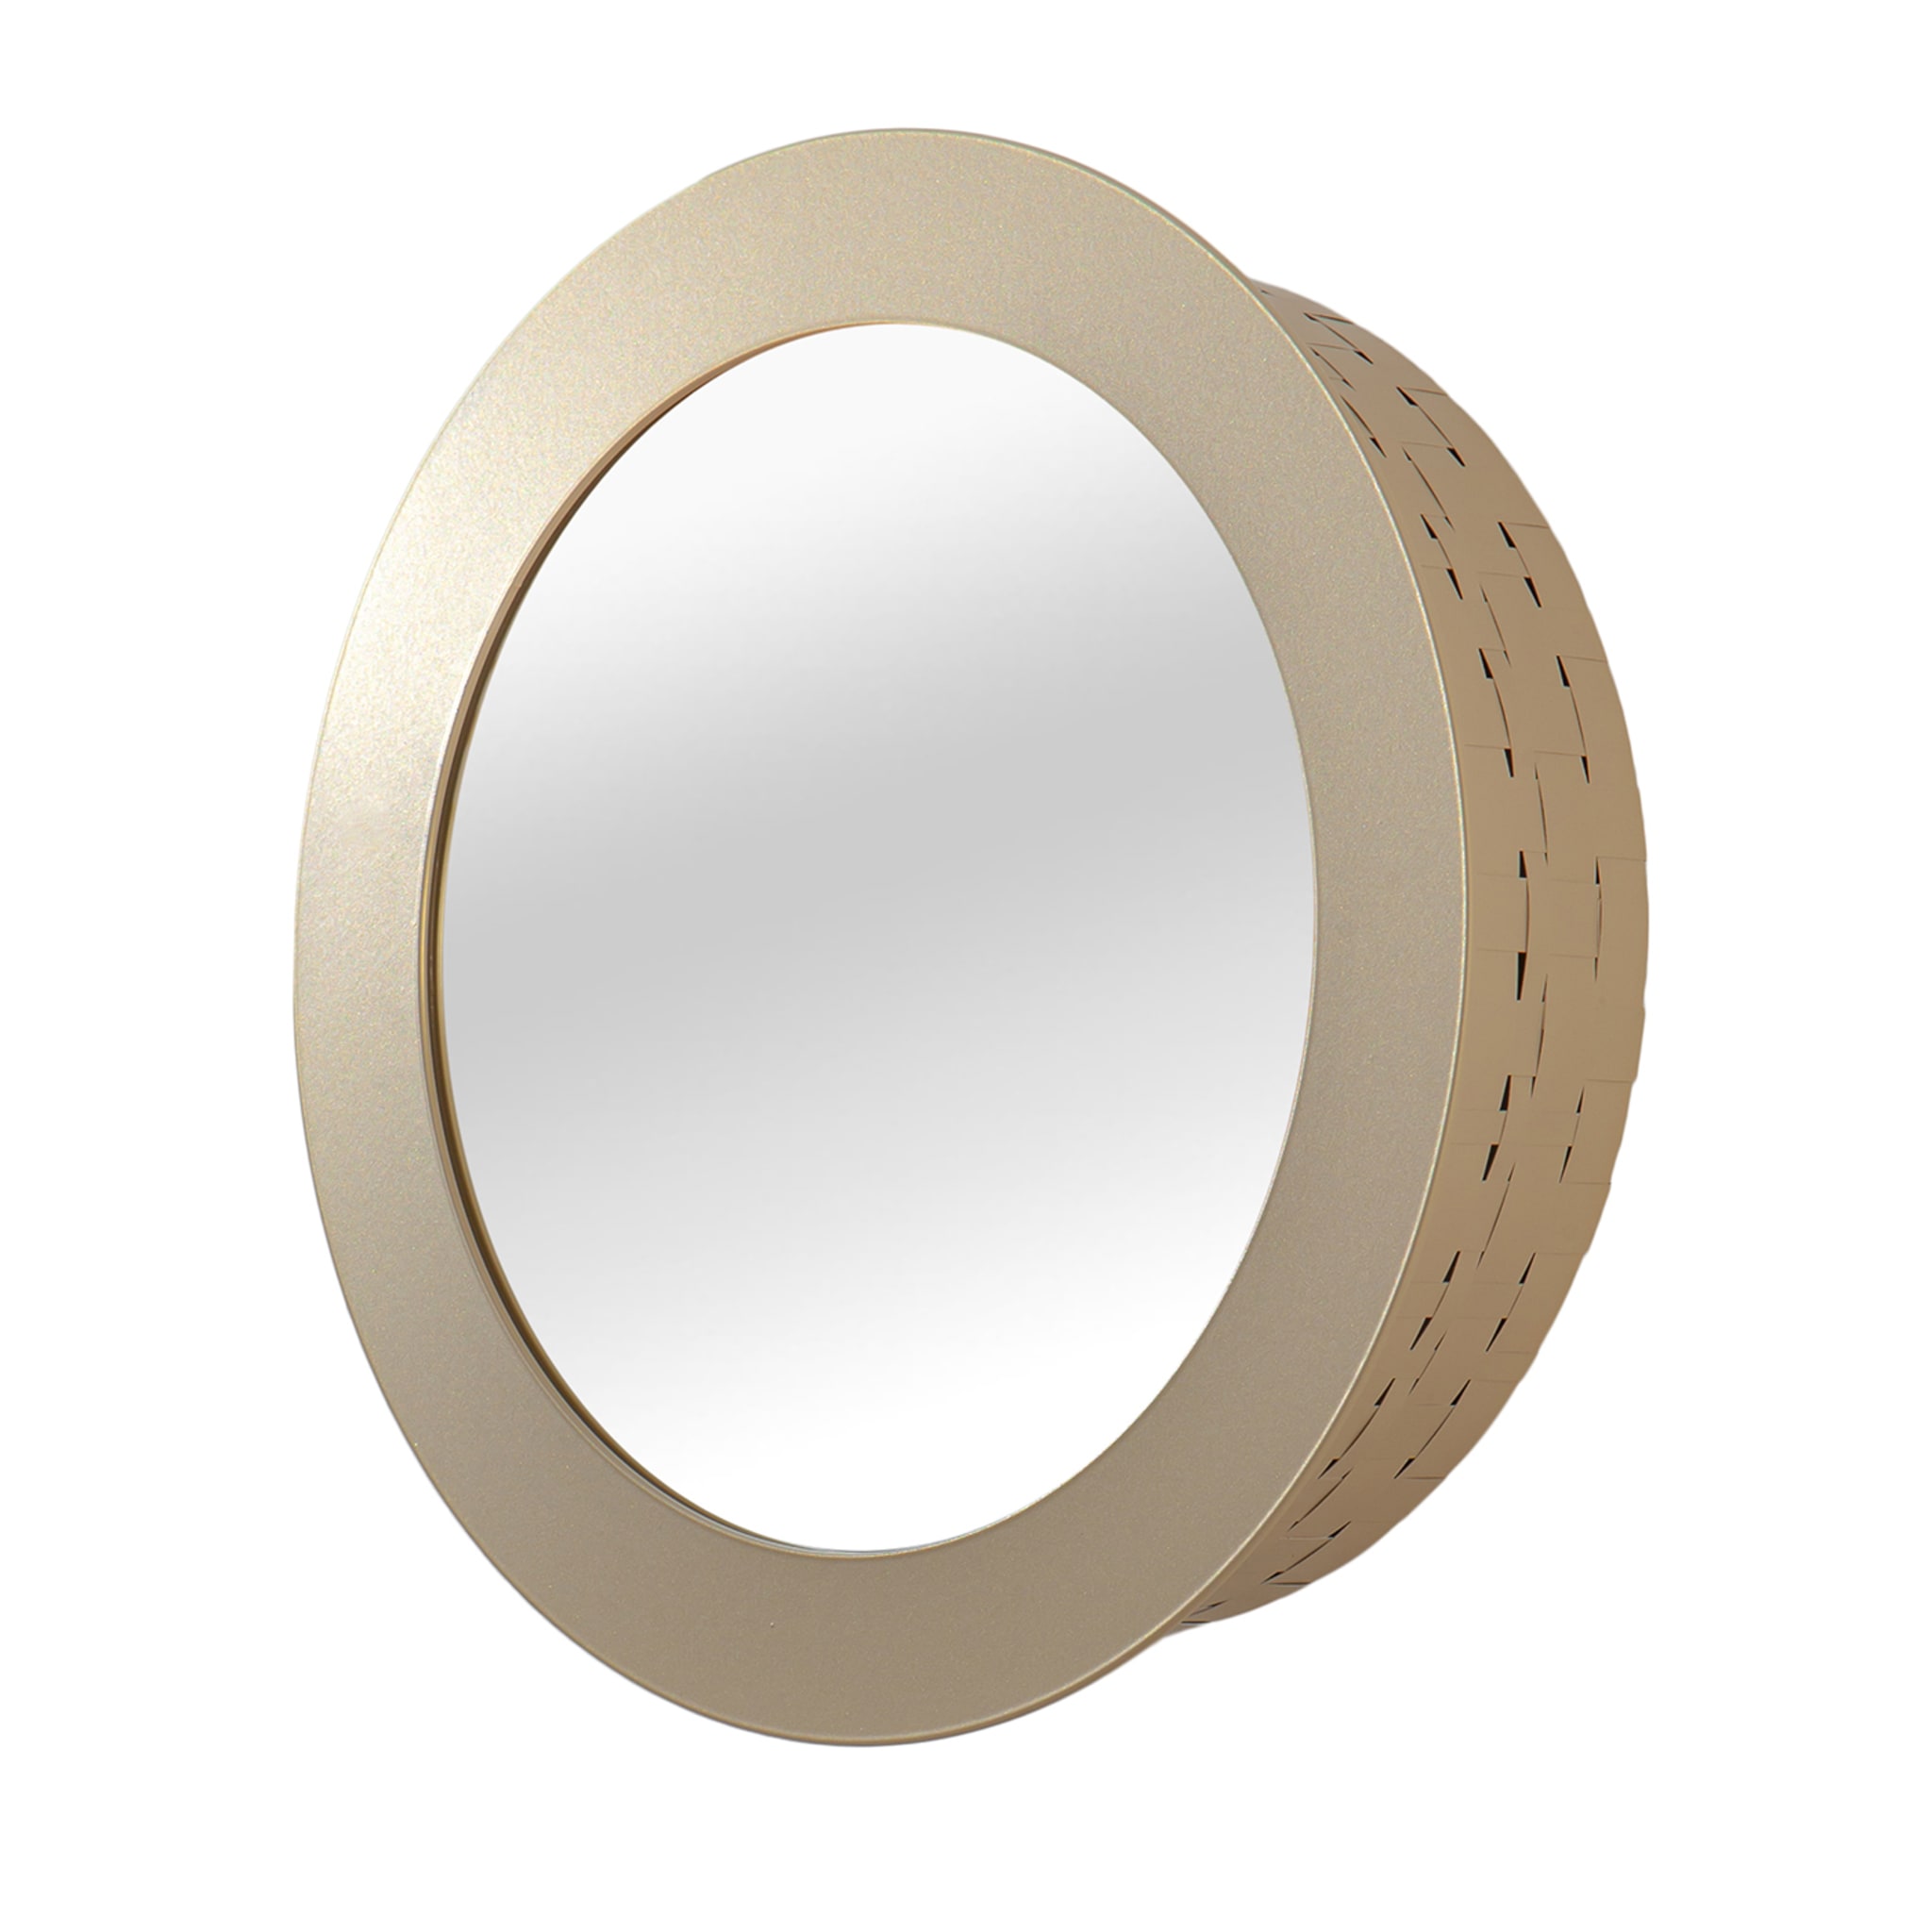 Celato 40 Round Golden Mirror - Main view